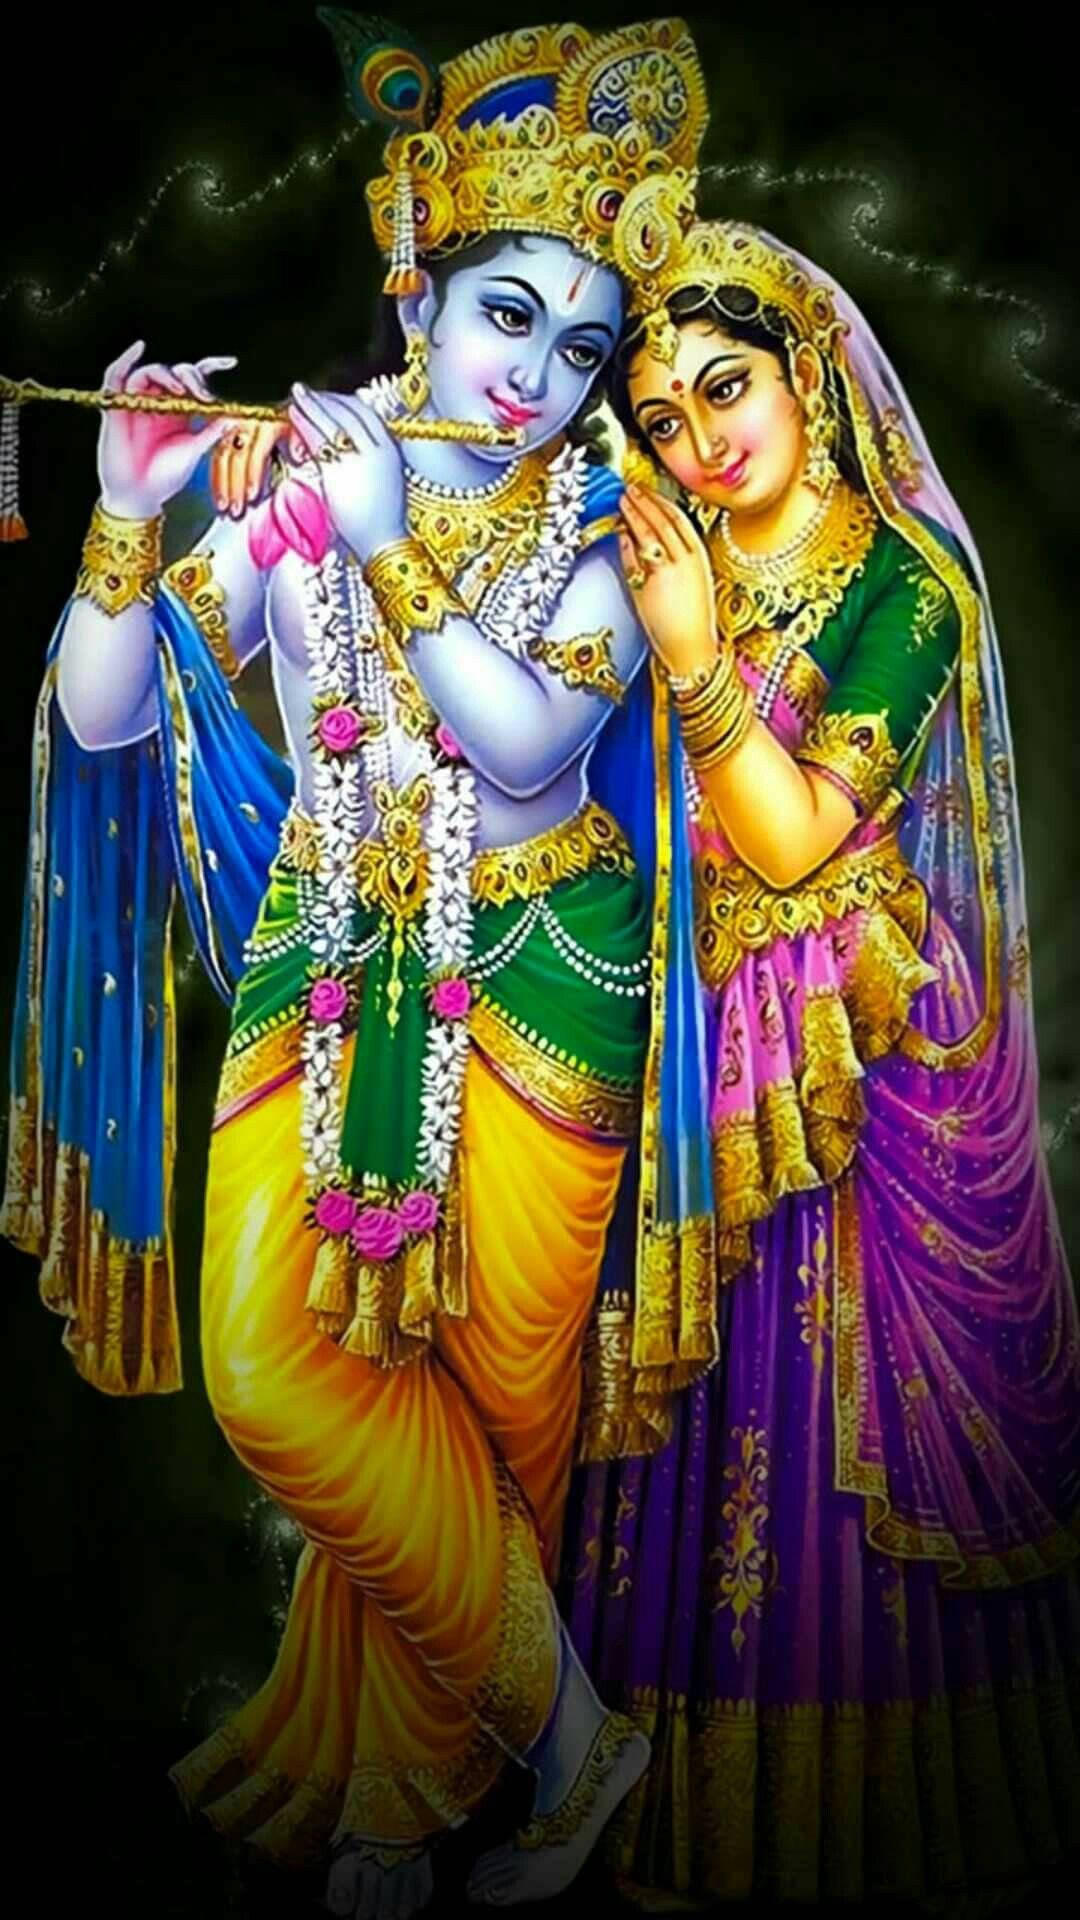 Animated Image Of Radha Leaning On Krishna's Shoulder